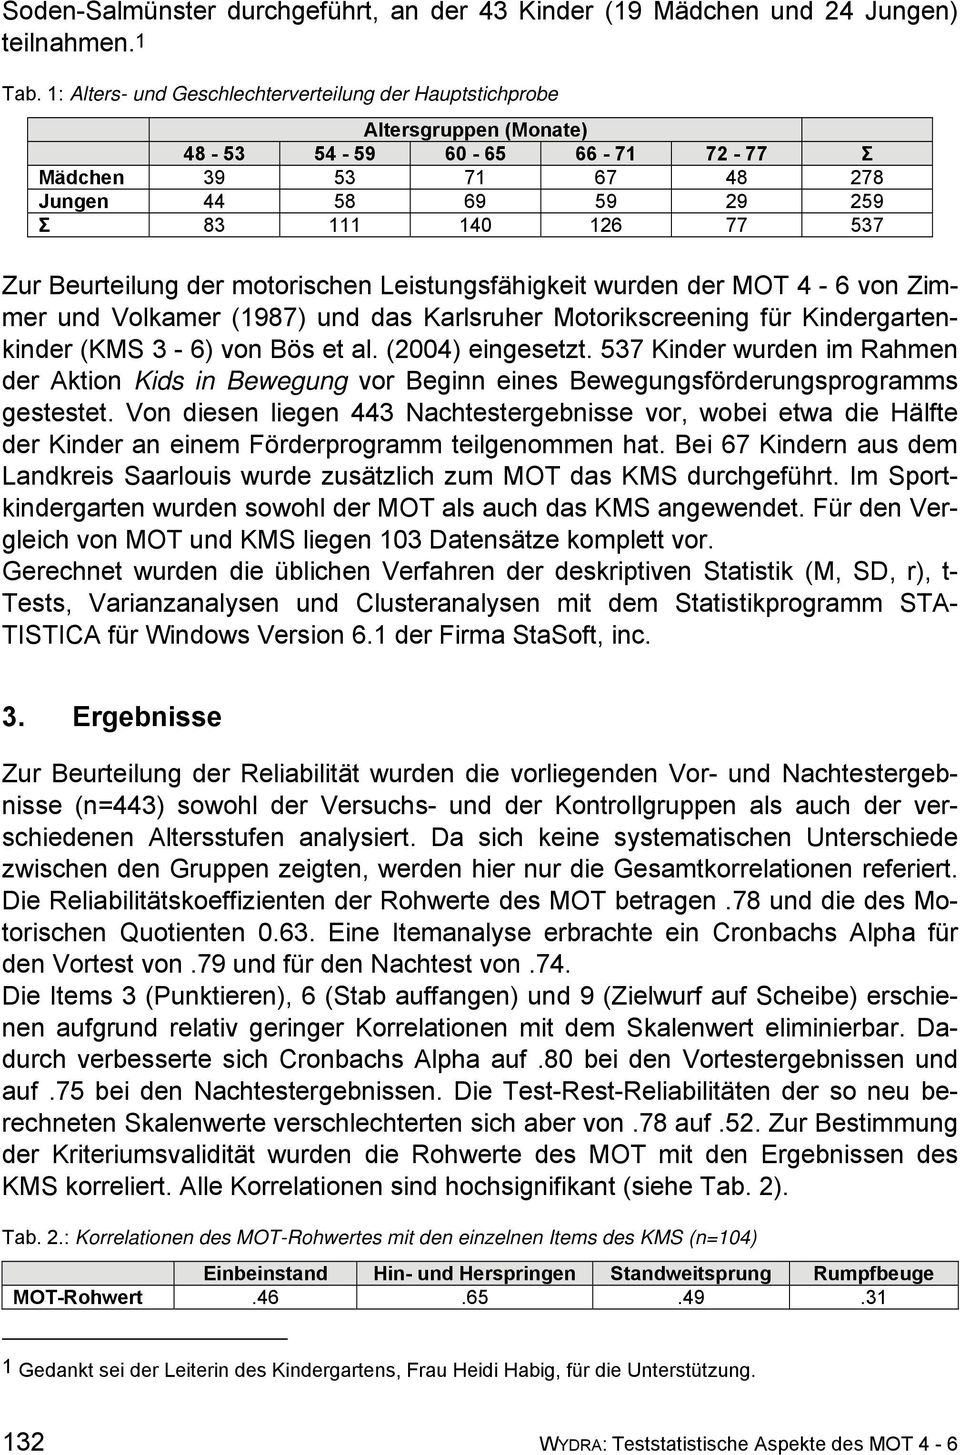 Beurteilung der motorischen Leistungsfähigkeit wurden der MOT 4-6 von Zimmer und Volkamer (1987) und das Karlsruher Motorikscreening für Kindergartenkinder (KMS 3-6) von Bös et al. (2004) eingesetzt.